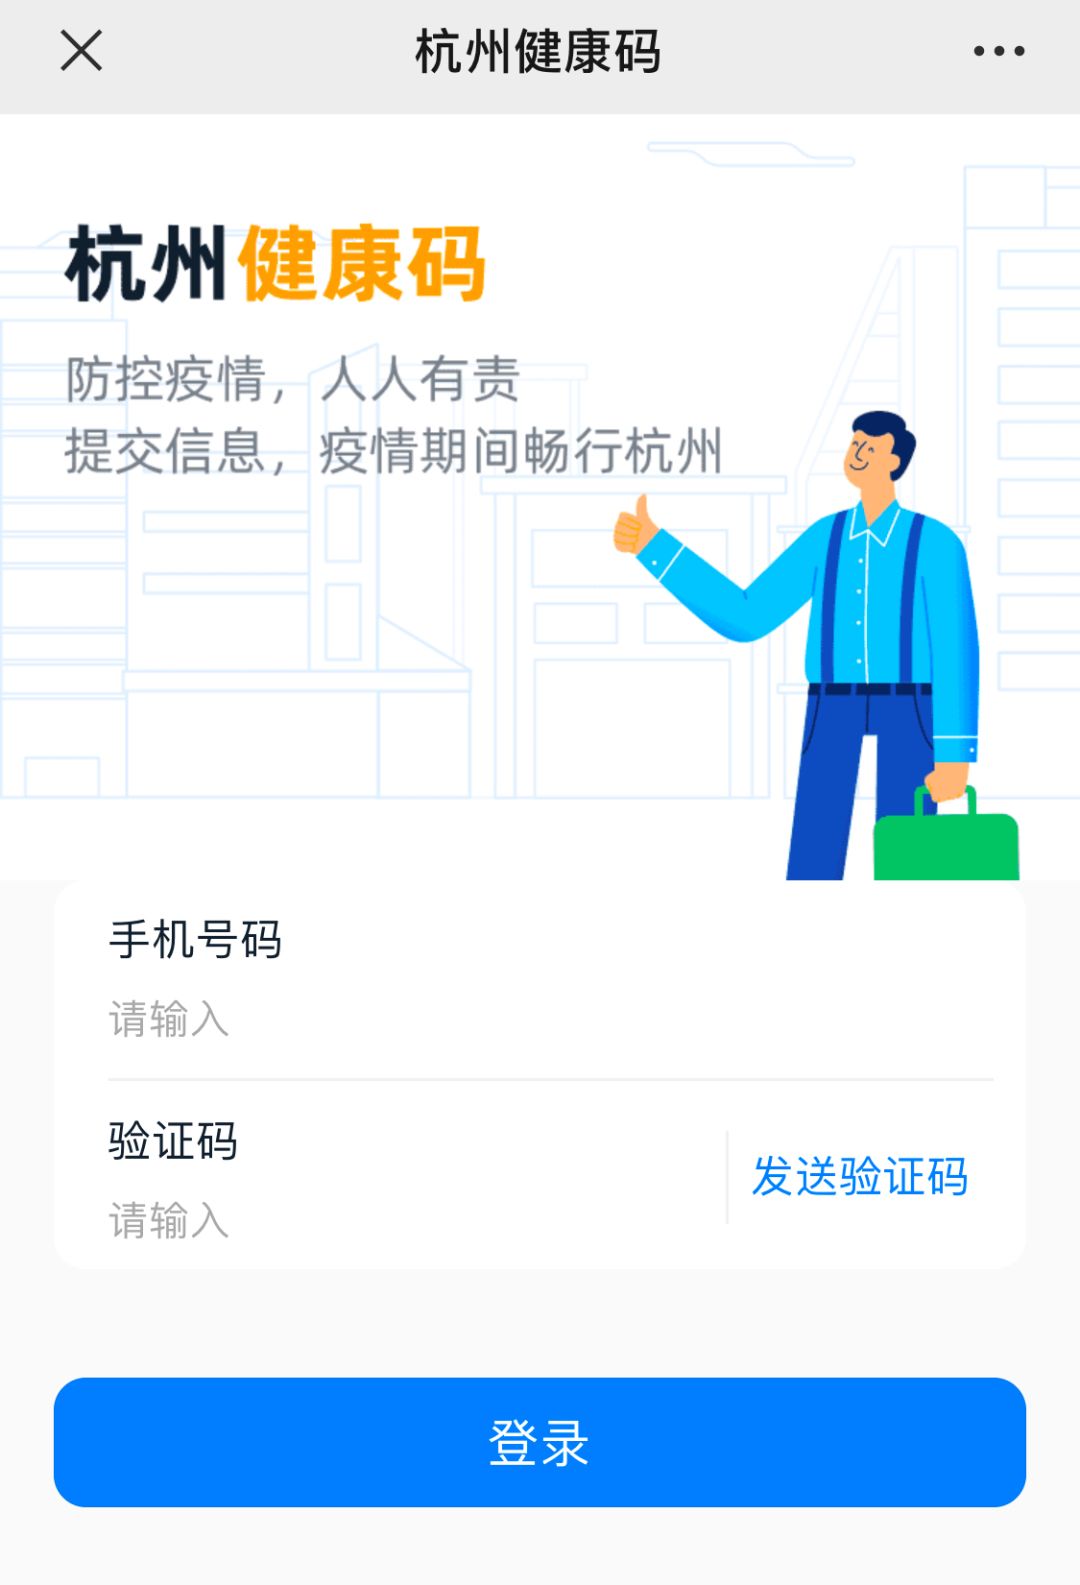 关于杭州健康码的18个常见问题扫码认证功能已上线冒用造假不可行